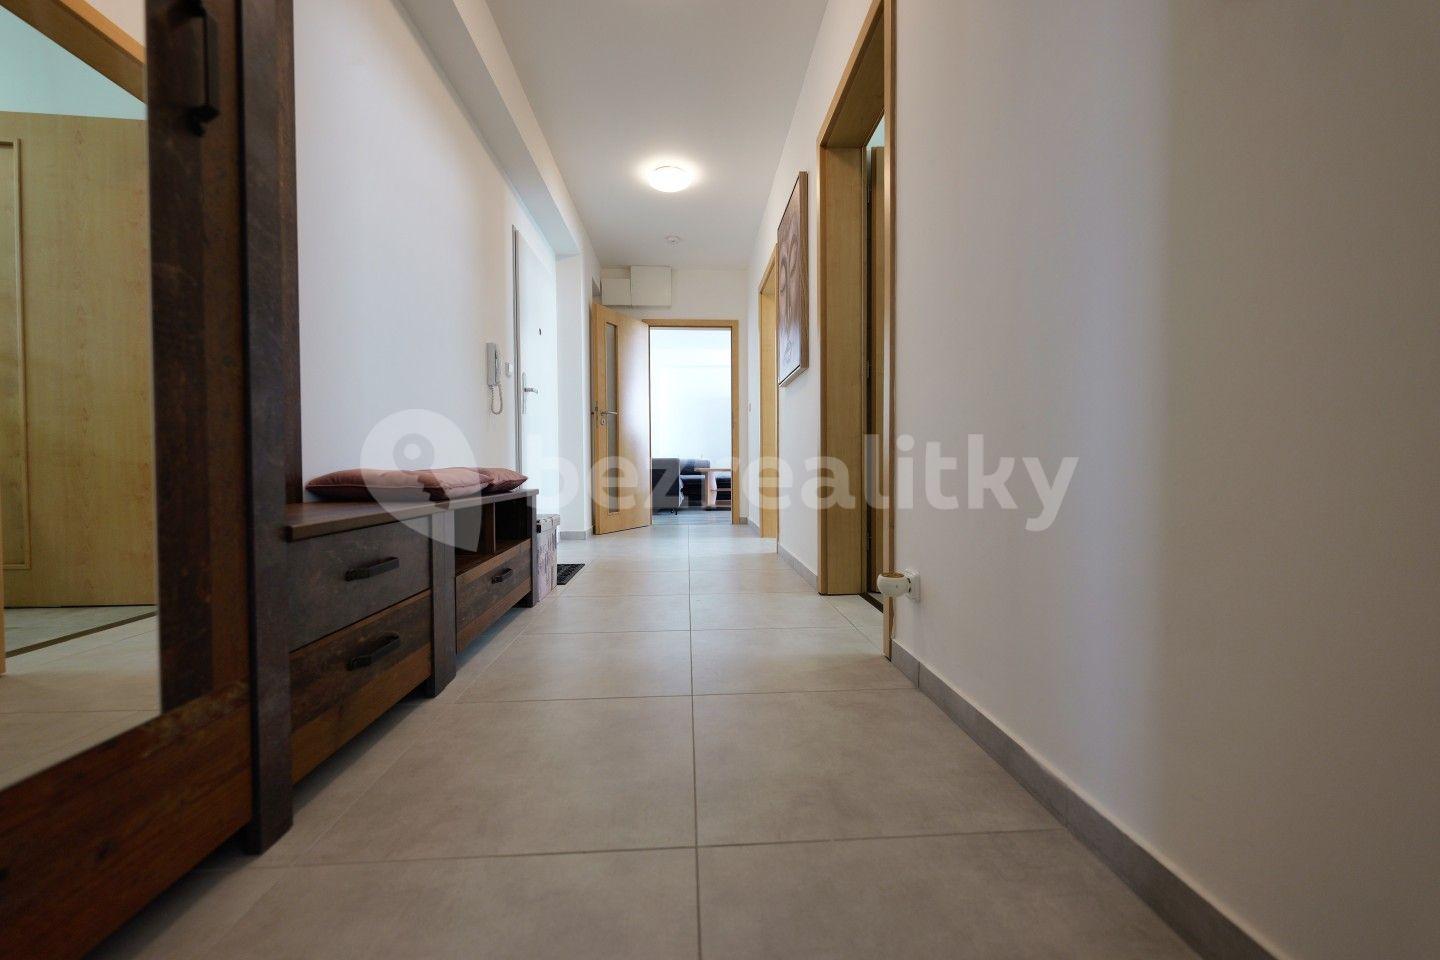 2 bedroom with open-plan kitchen flat for sale, 69 m², Partyzánská, Prostějov, Olomoucký Region